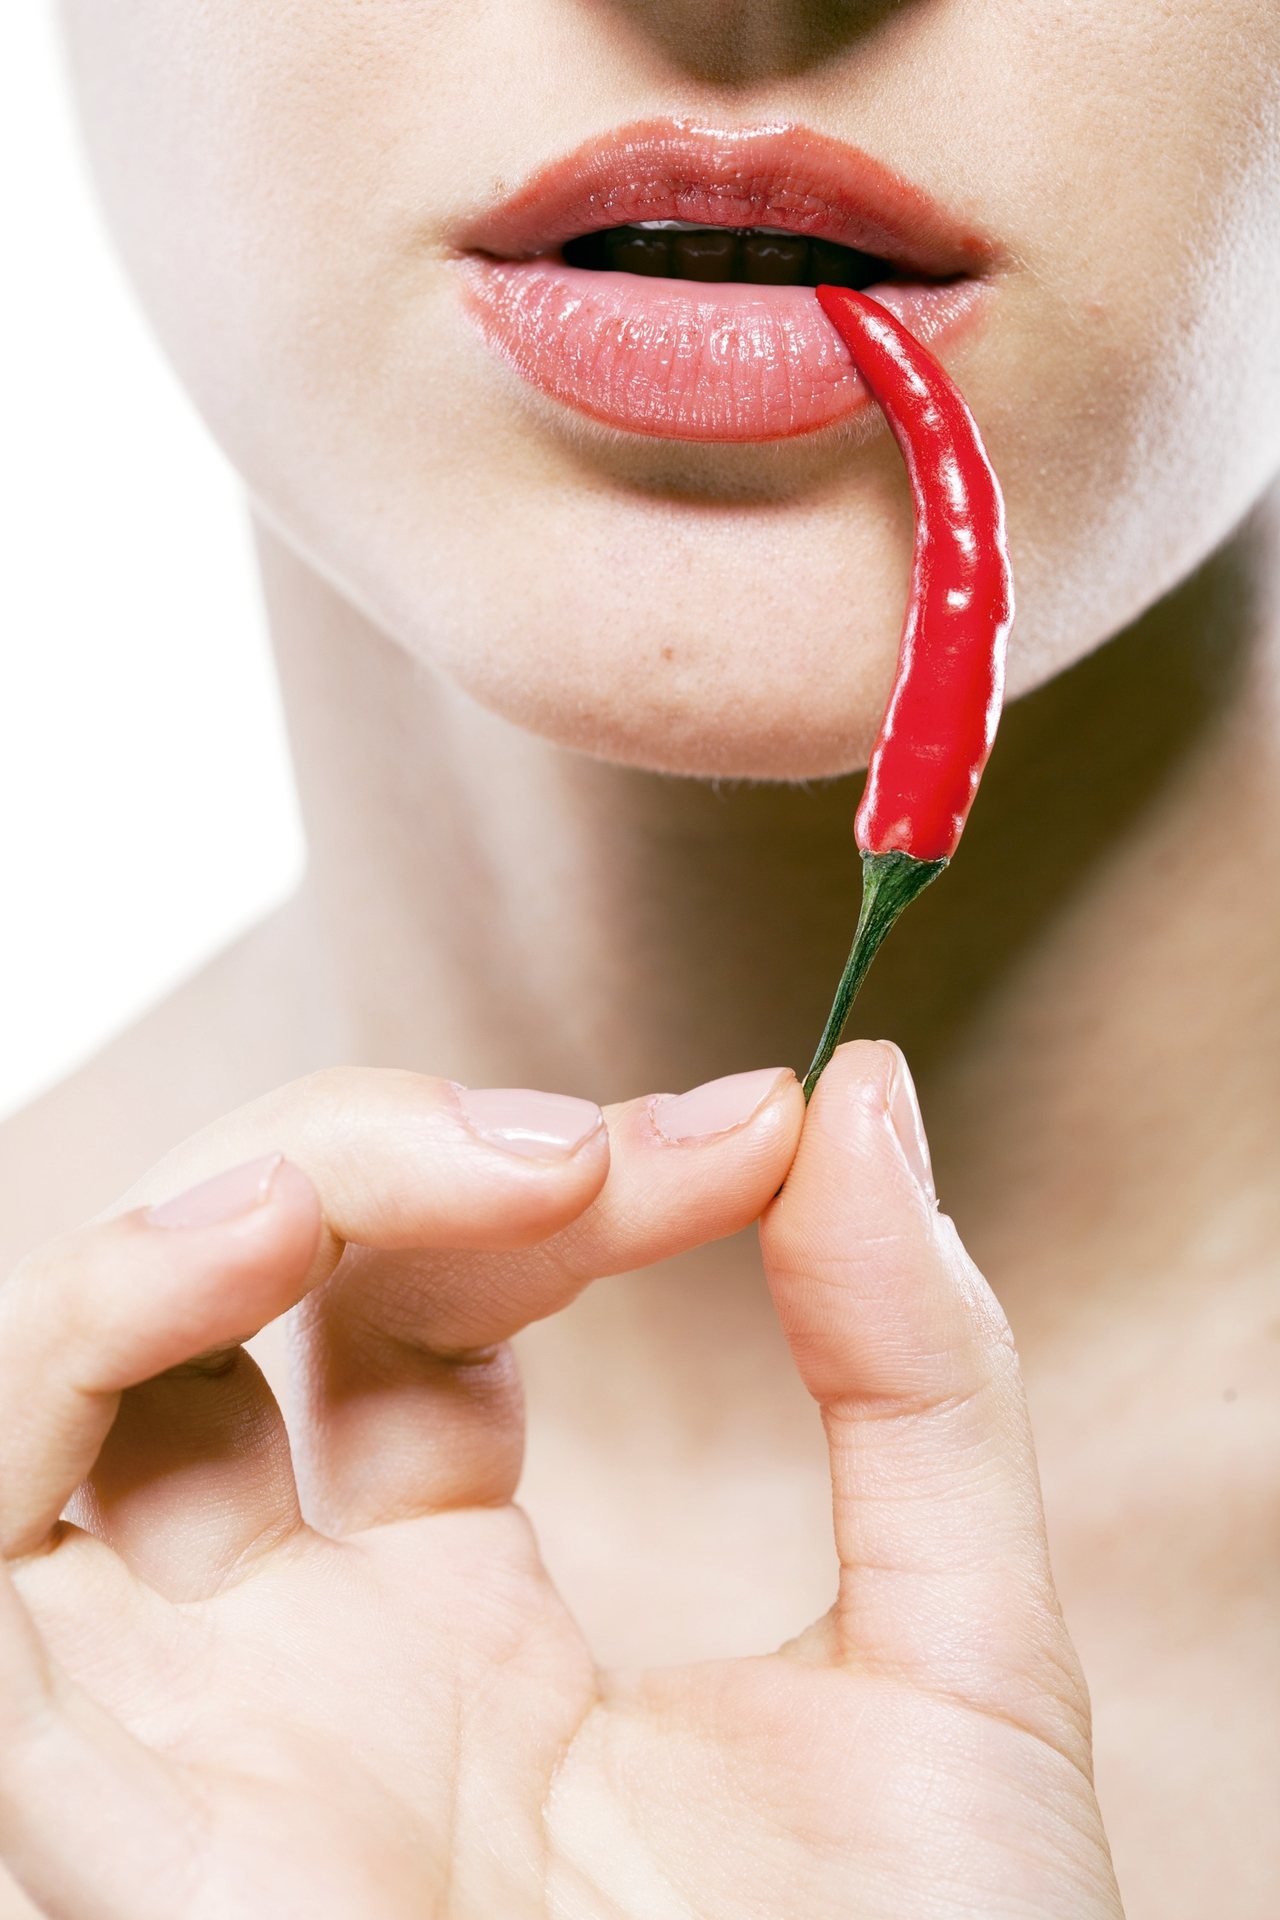 就像辣椒在舌頭上的辛辣感，辣椒也能幫忙增加性生活中的情趣。